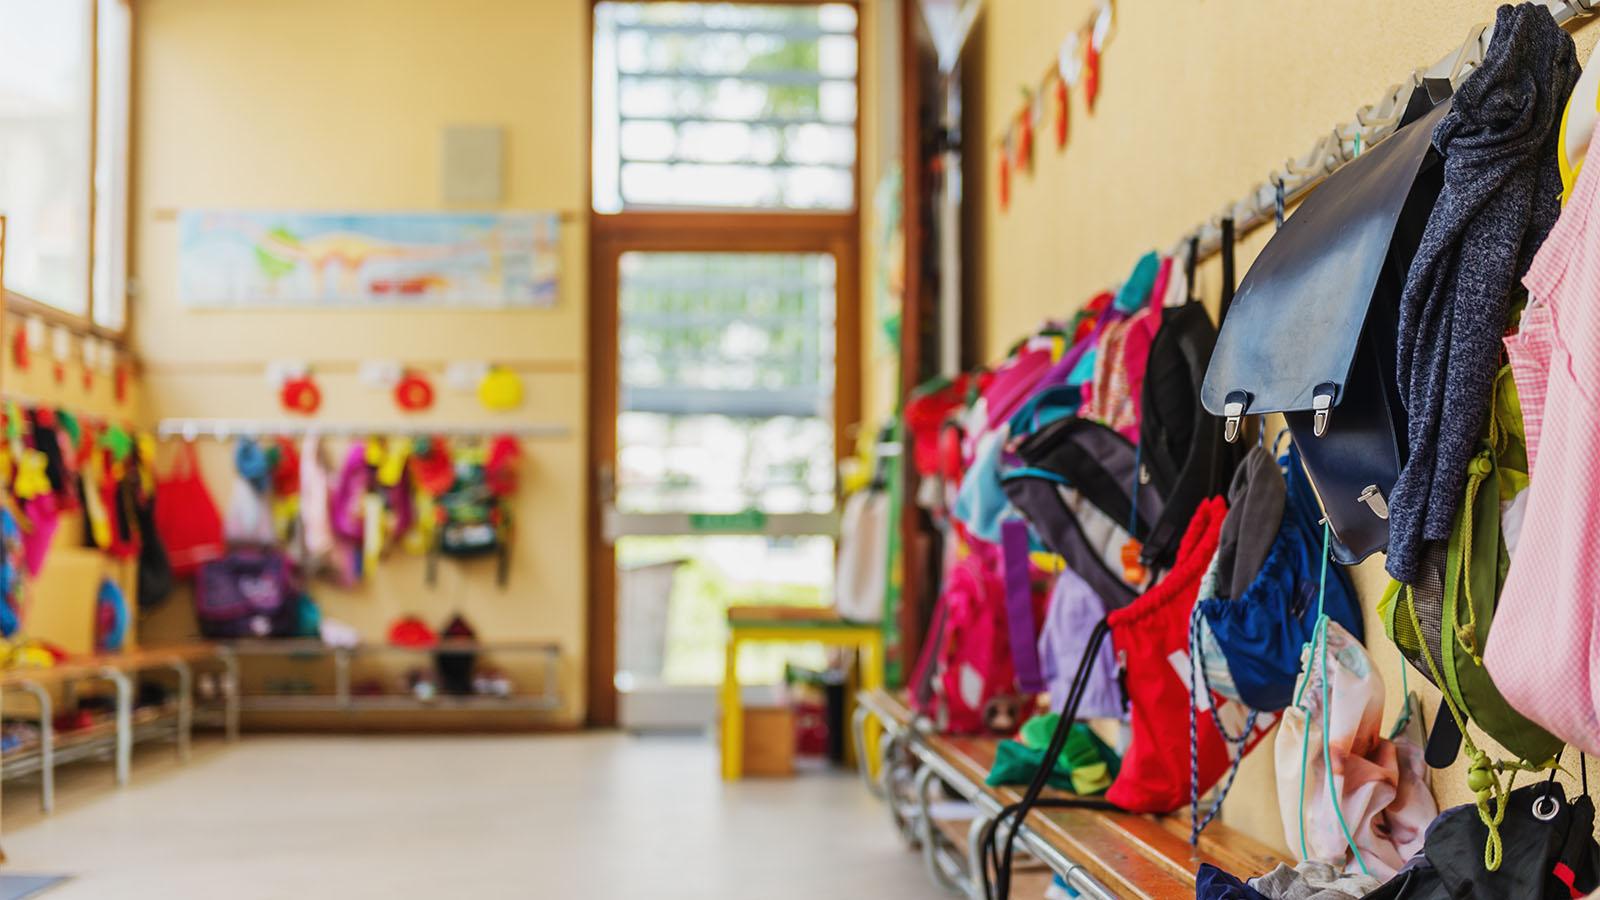 A preschool classroom. Photograph: Shutterstock